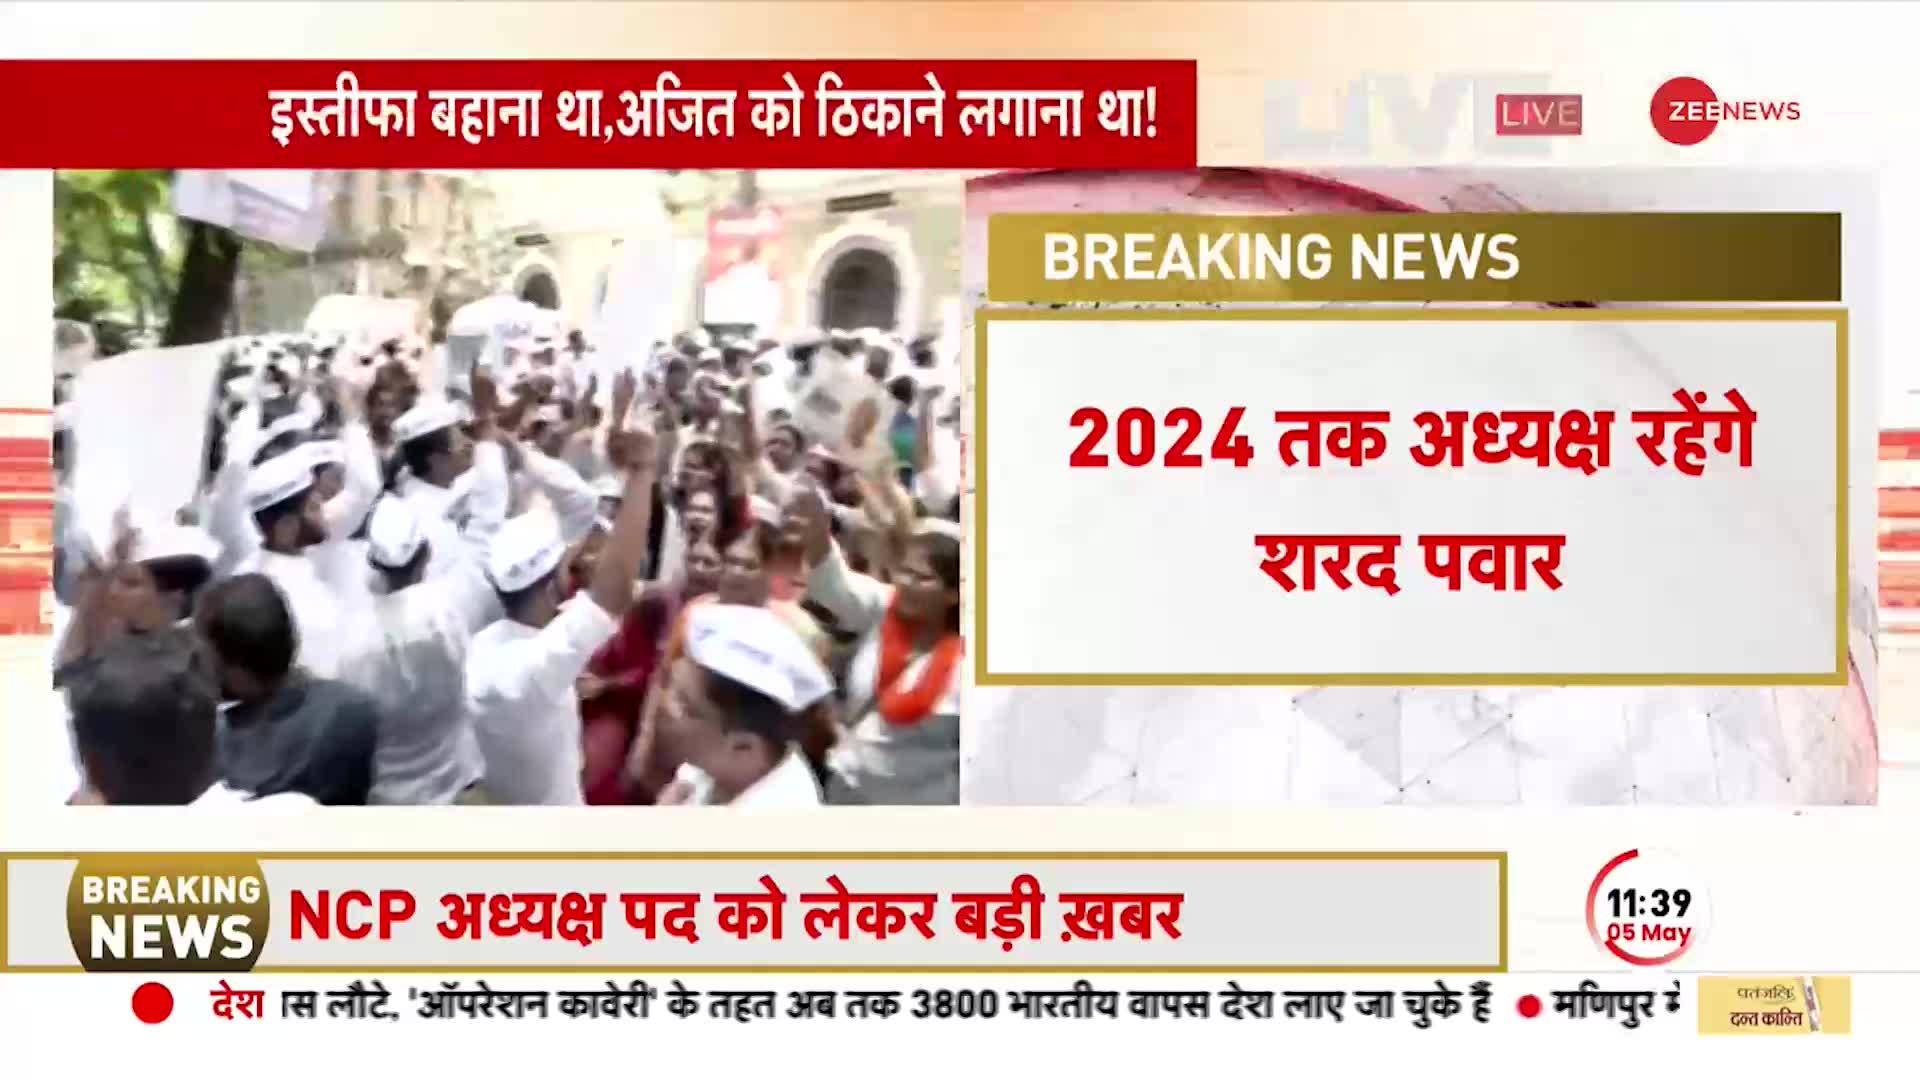 BREAKING NEWS: 2024 तक NCP के अध्यक्ष बने रहेंगे Sharad Pawar, थोड़ी देर में होगी प्रेस कांफ्रेंस